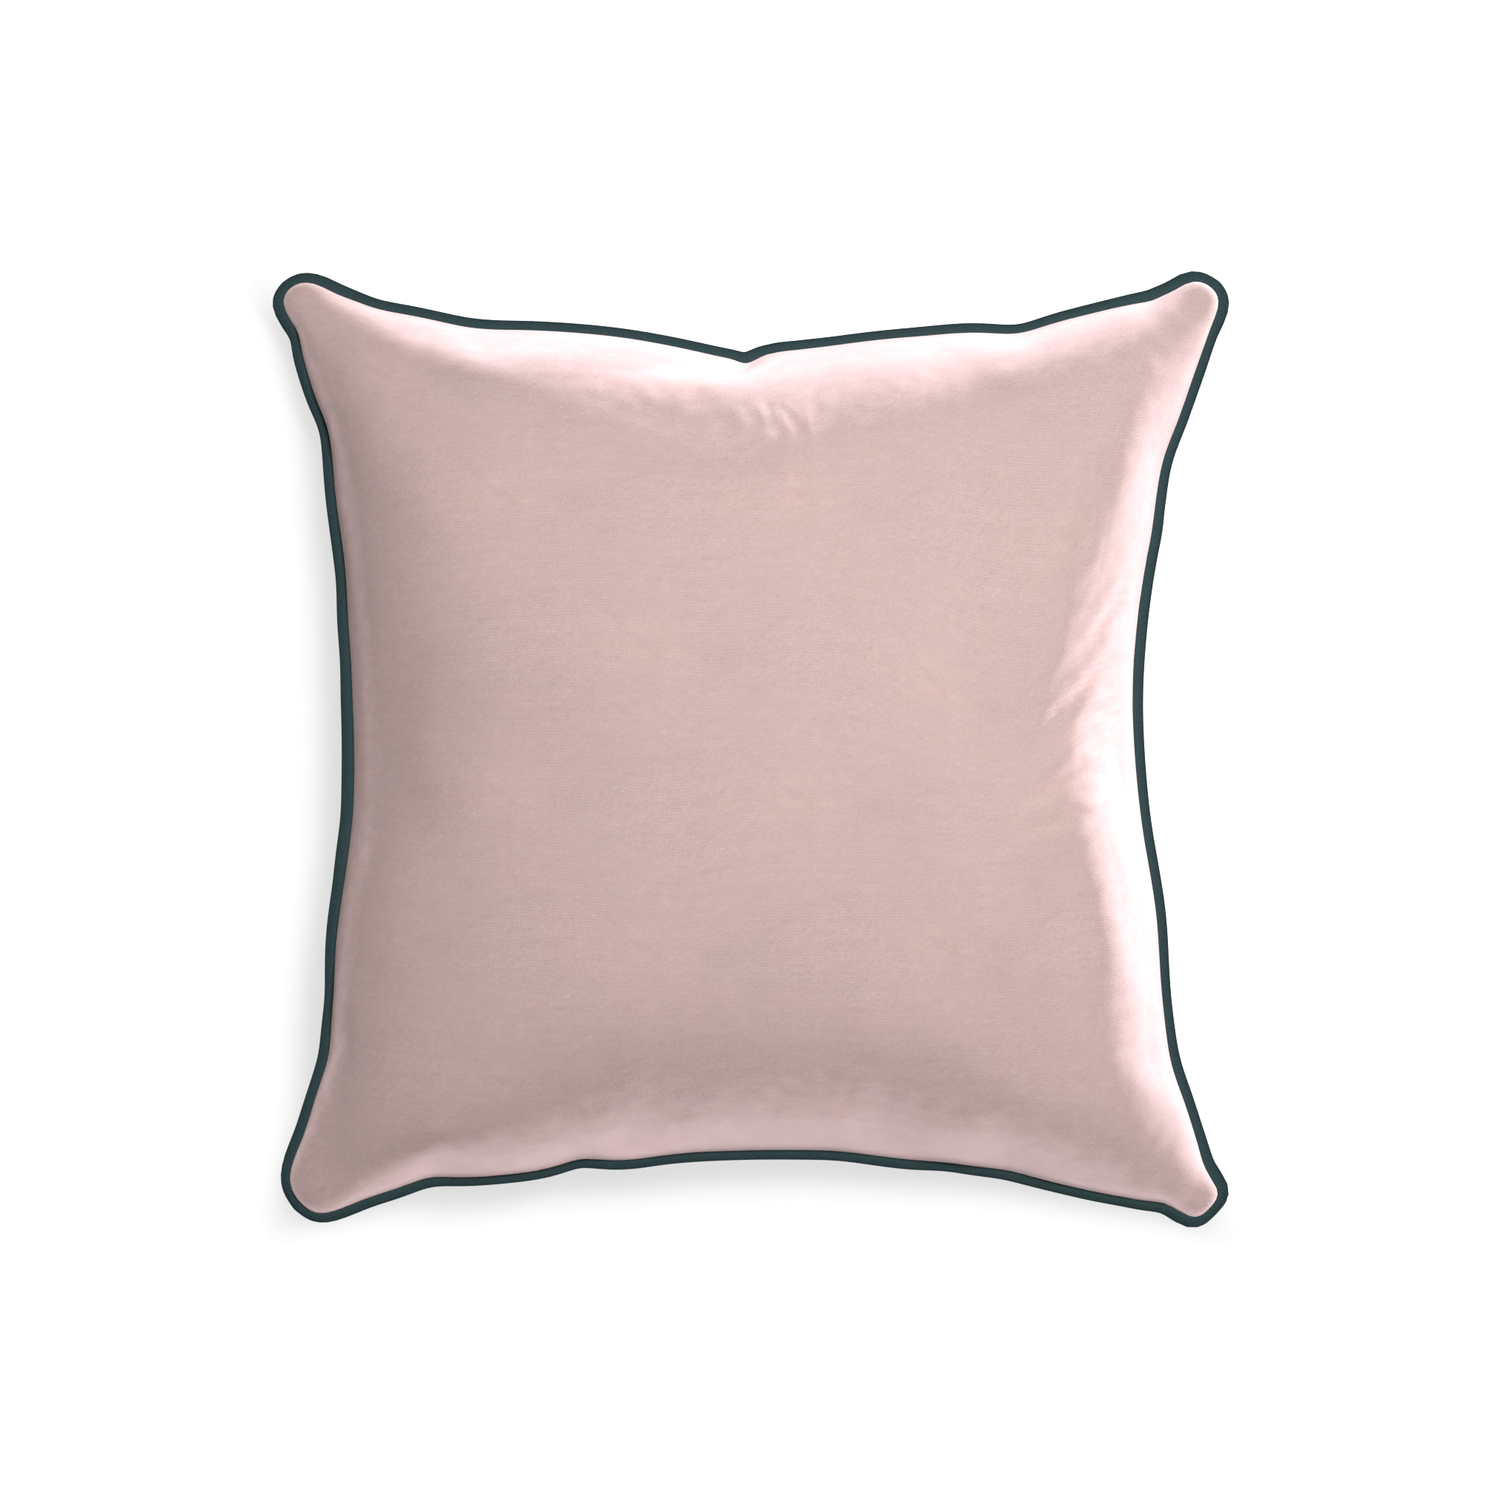 20-square rose velvet custom light pinkpillow with p piping on white background